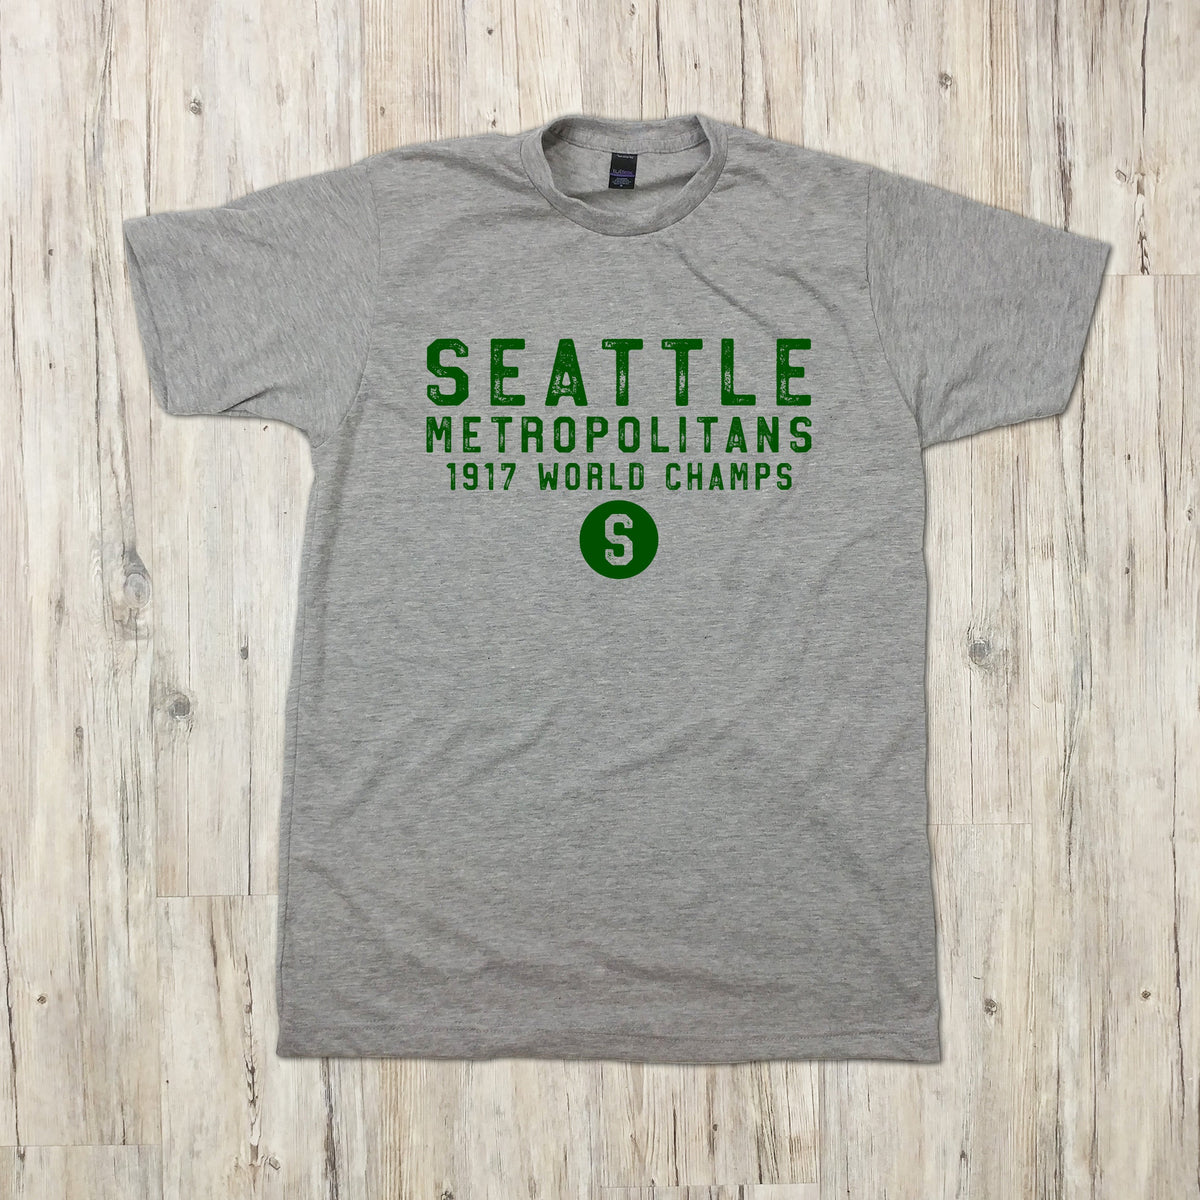 Seattle Metropolitans vintage T-shirt